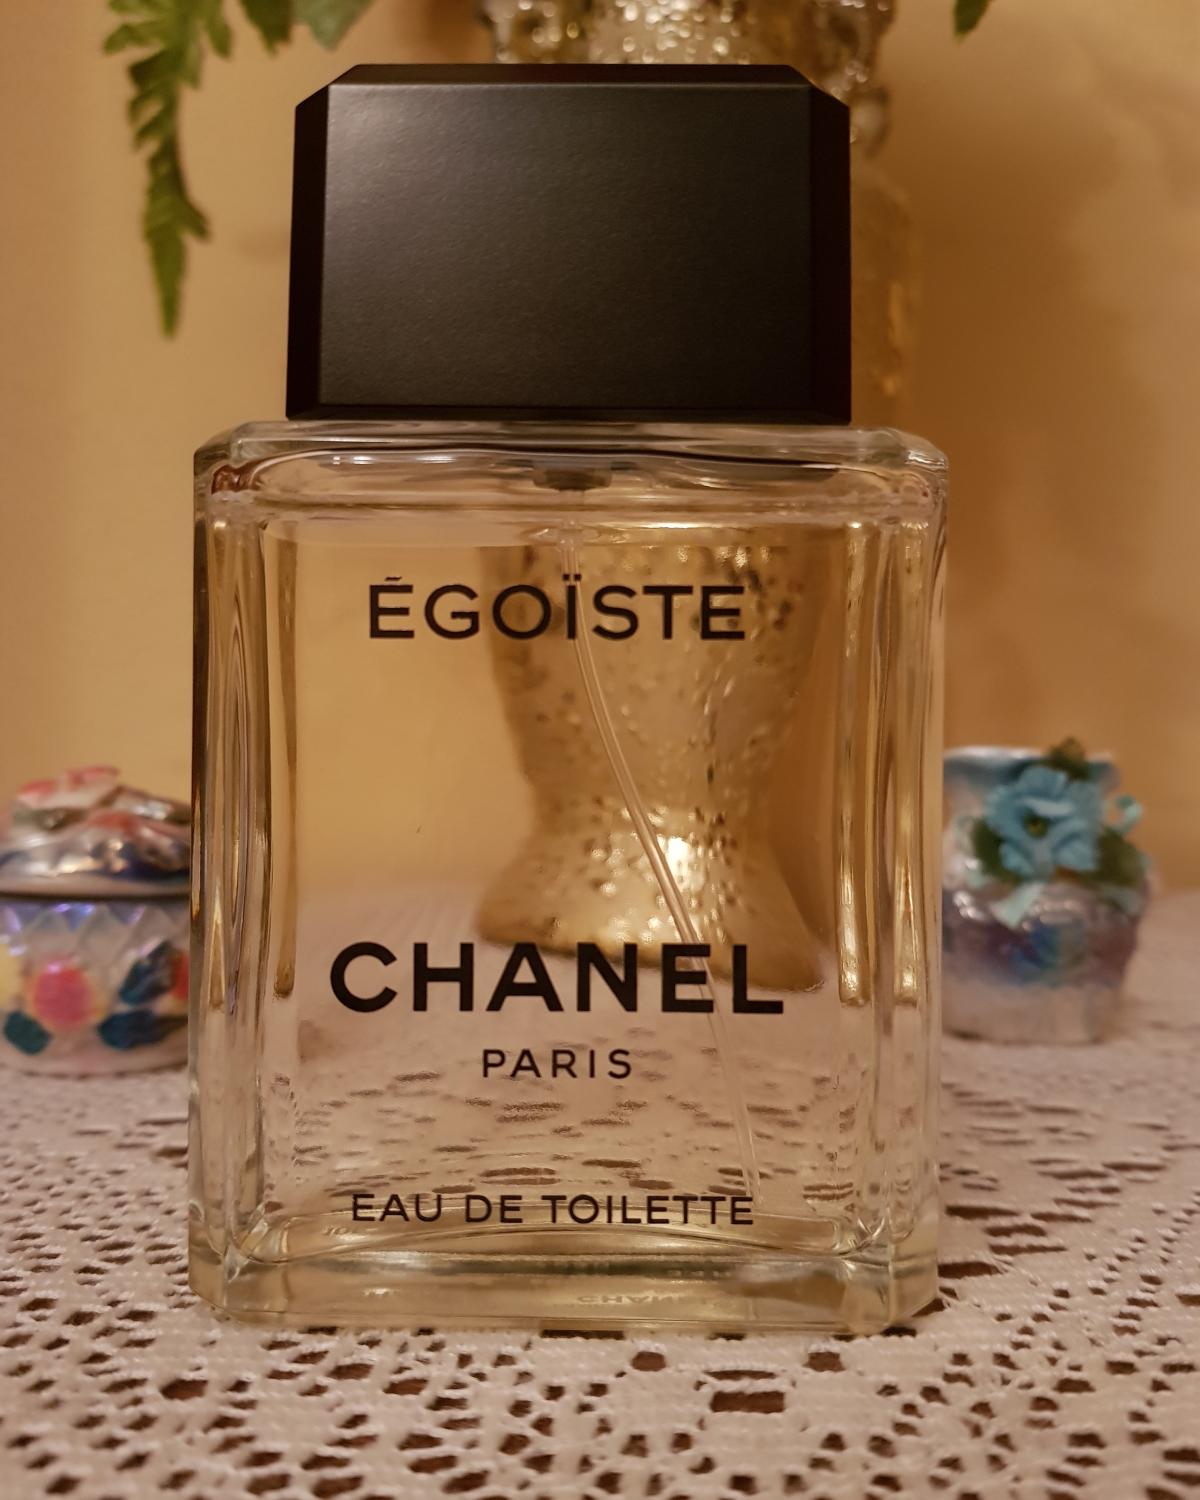 Egoiste Chanel одеколон — аромат для мужчин 1990